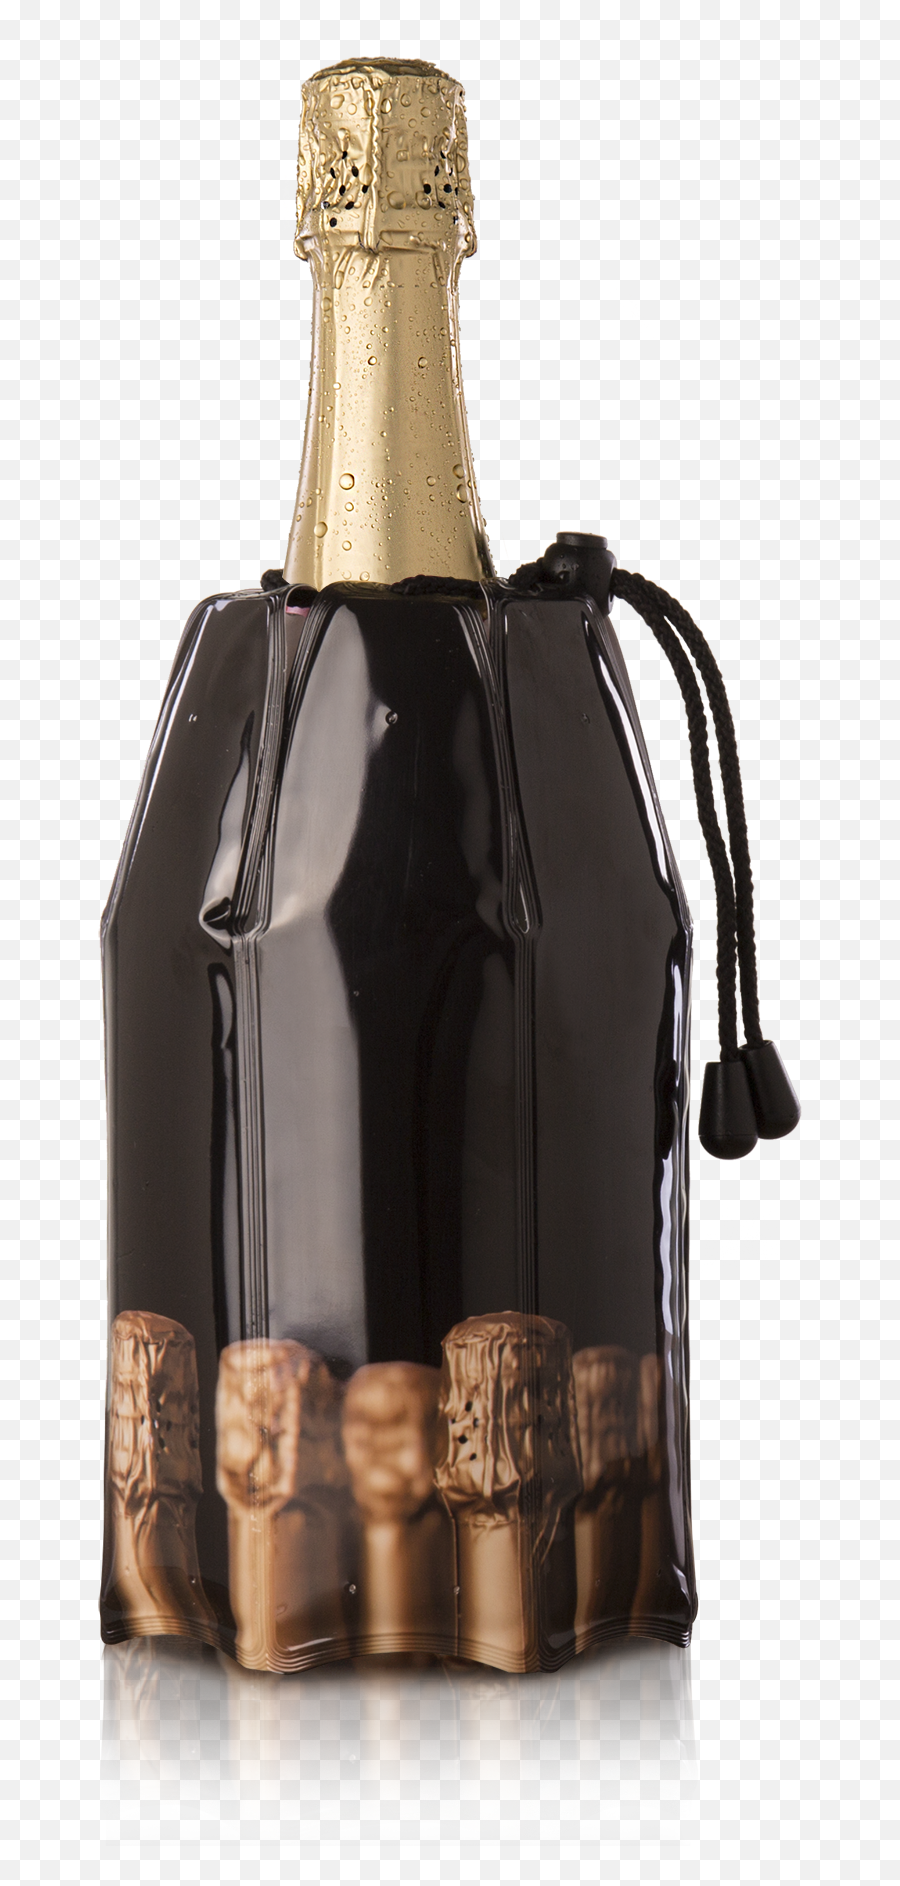 Active Cooler Champagne Bottles - Champagne Emoji,Champagne Bottle Png